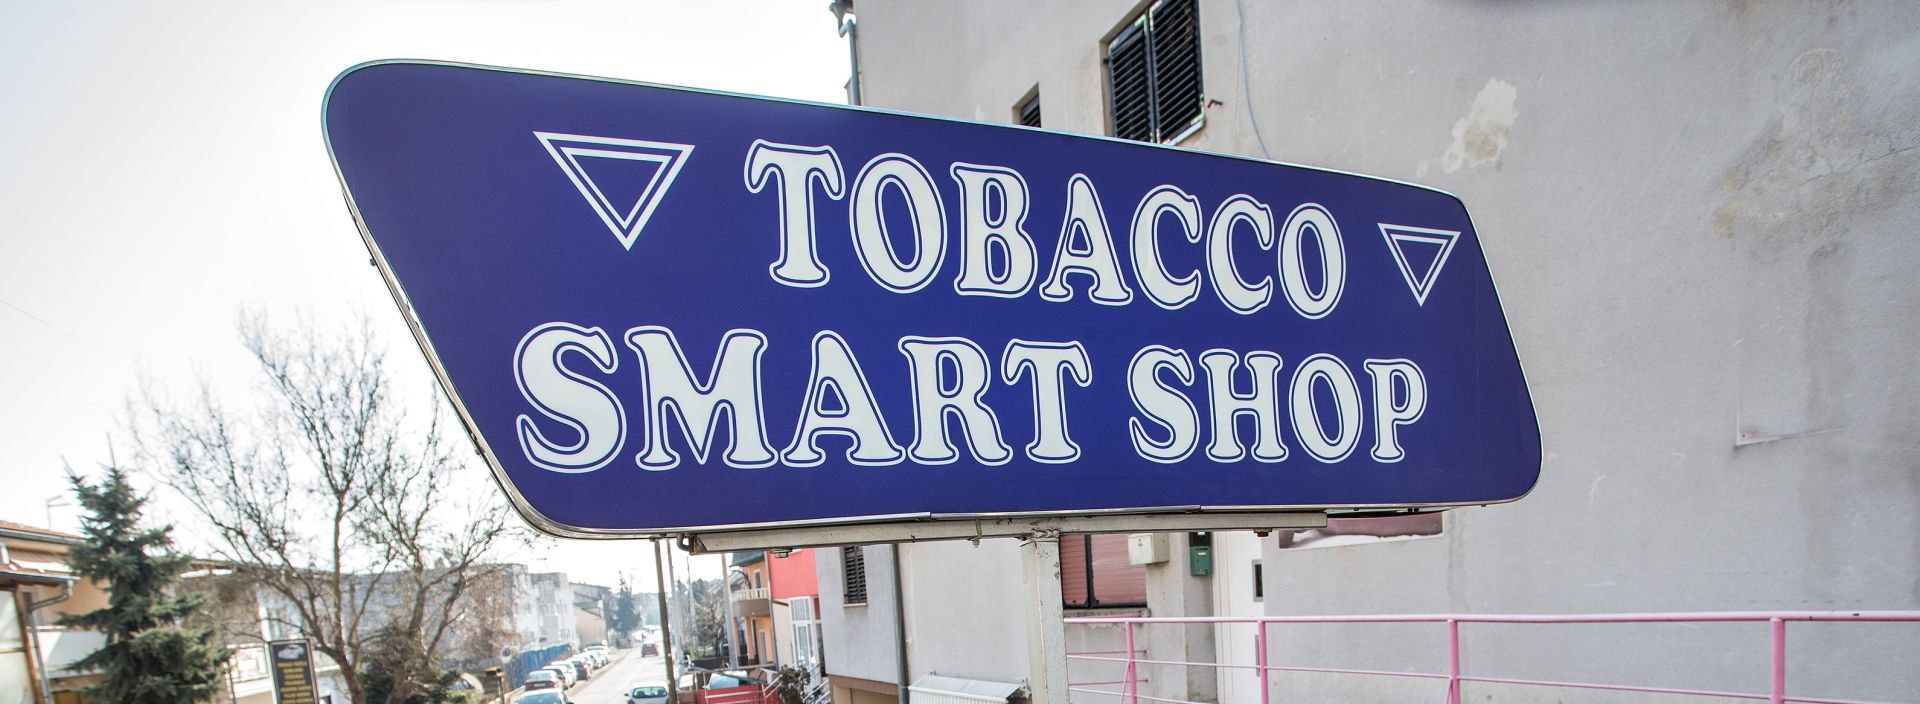 16.02.2015., Zagreb -  Djelatnicu Tobacco Smart Shopa u Aveniji Dubrava 66 opljackala su u petak dva maskirana pljackasa. 
Photo: Davor Puklavec/PIXSELL